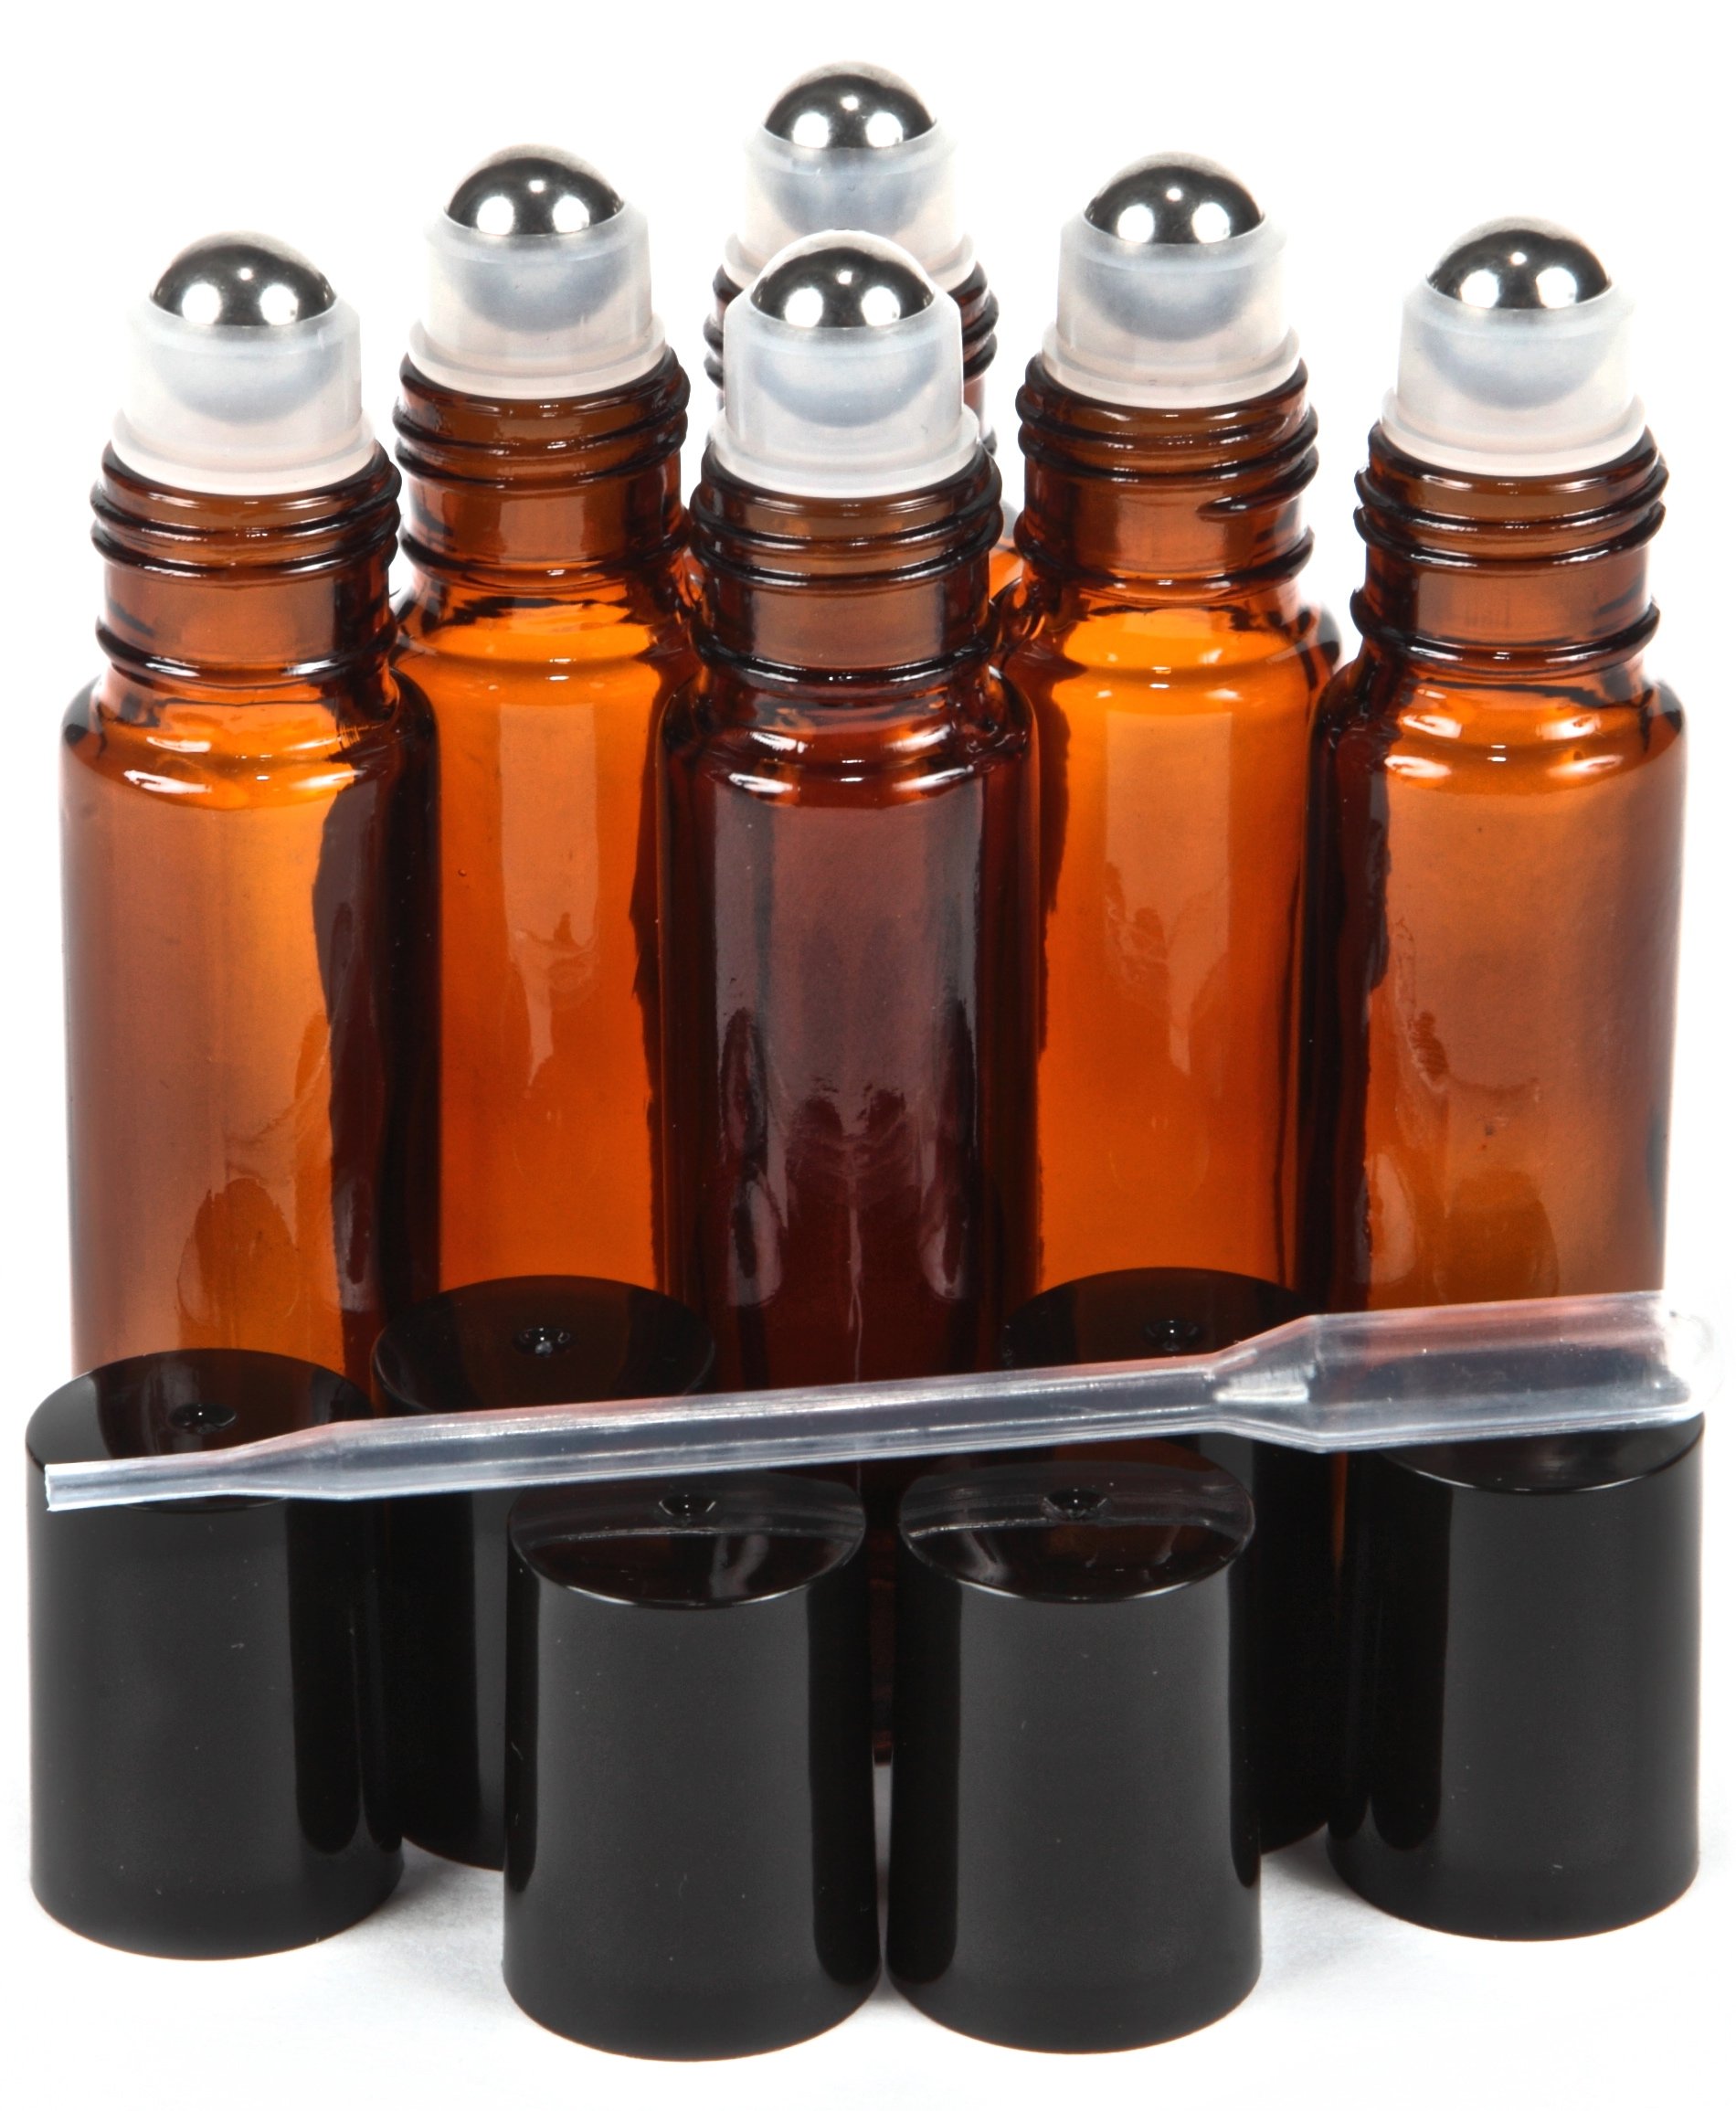 Vivaplex, 6, Amber, 10 ml Glass Roll-on Bottles with Stainless Steel Roller Balls - .5 ml Dropper included